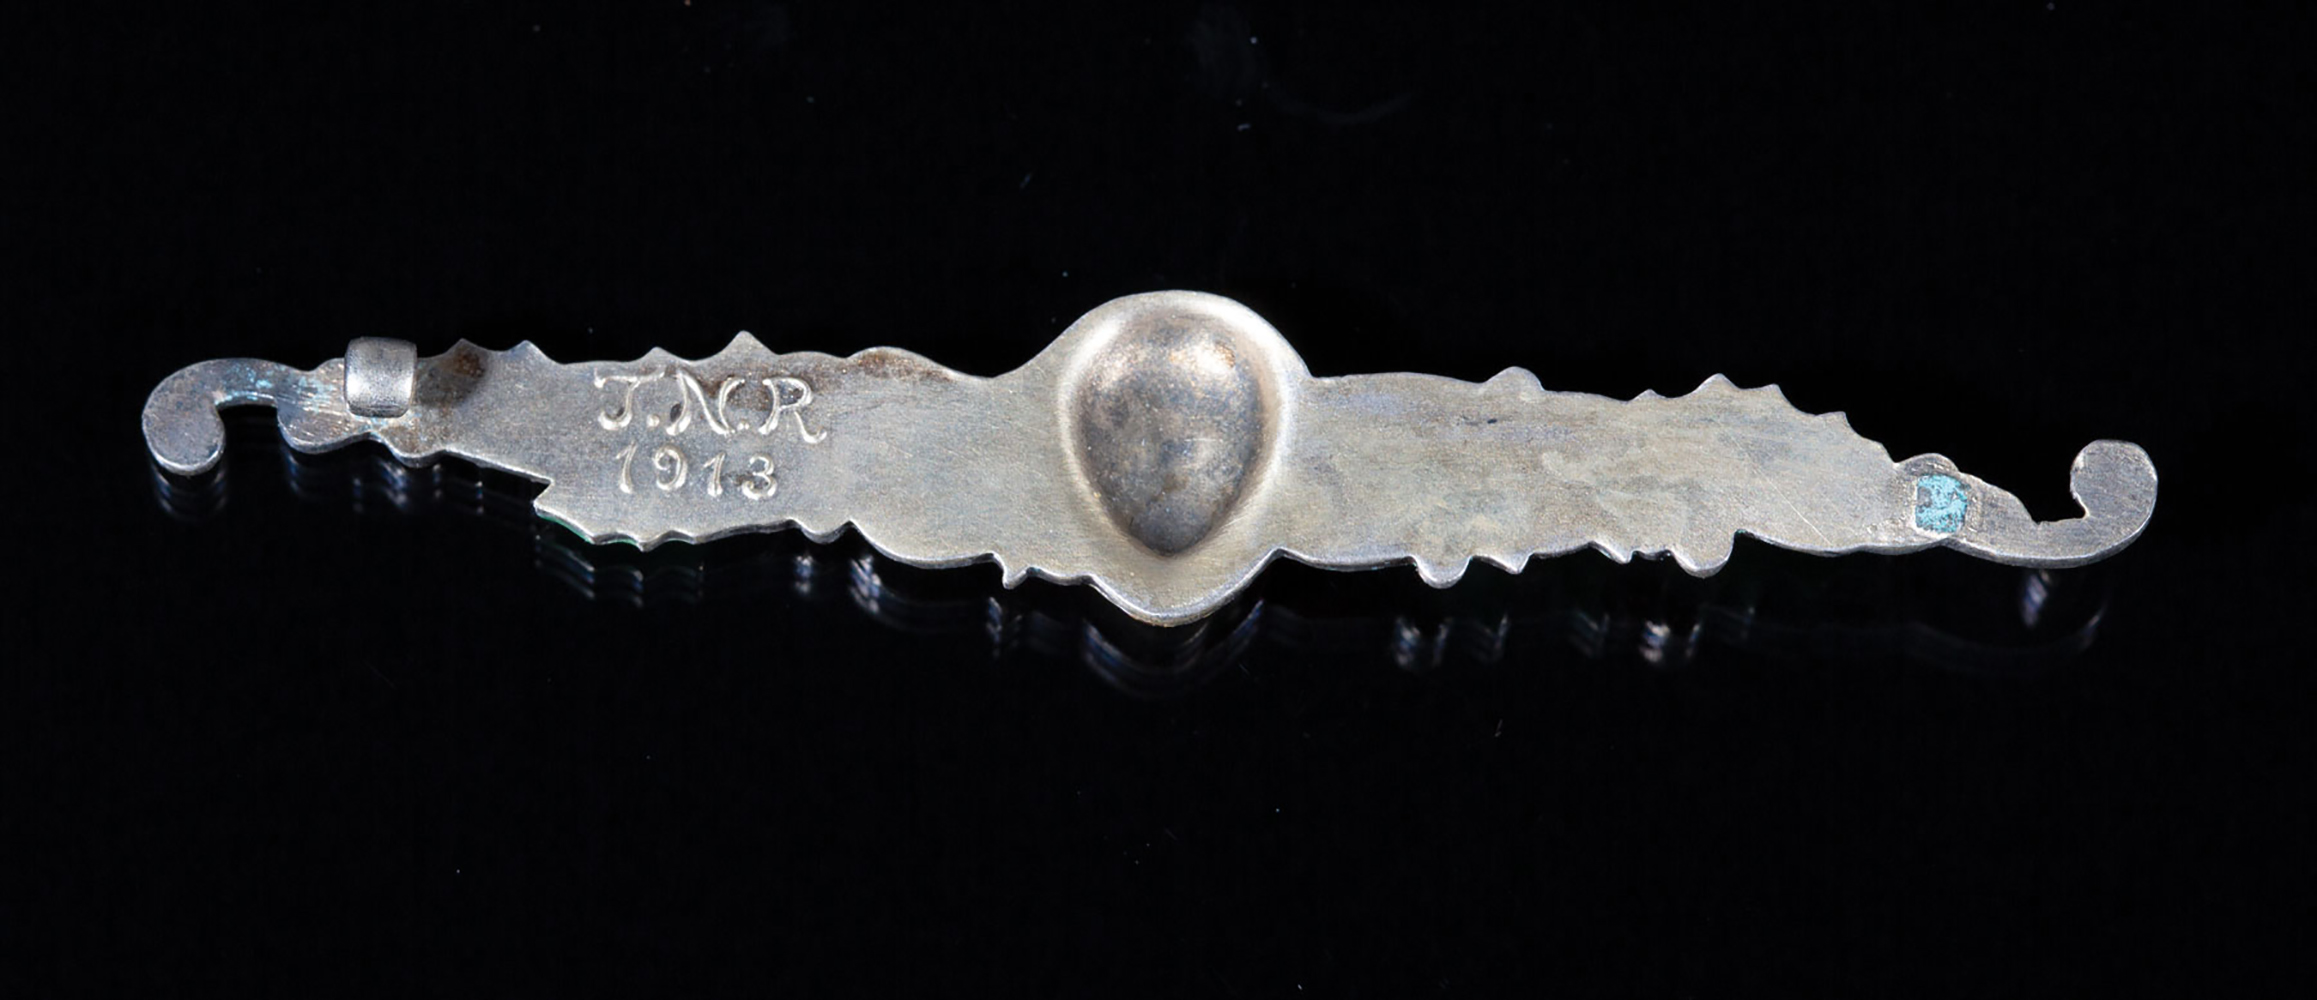 [MARDI GRAS] , Twelfth Night Revelers, enameled krewe favor pin, 1913, now lacking pin - Image 2 of 2